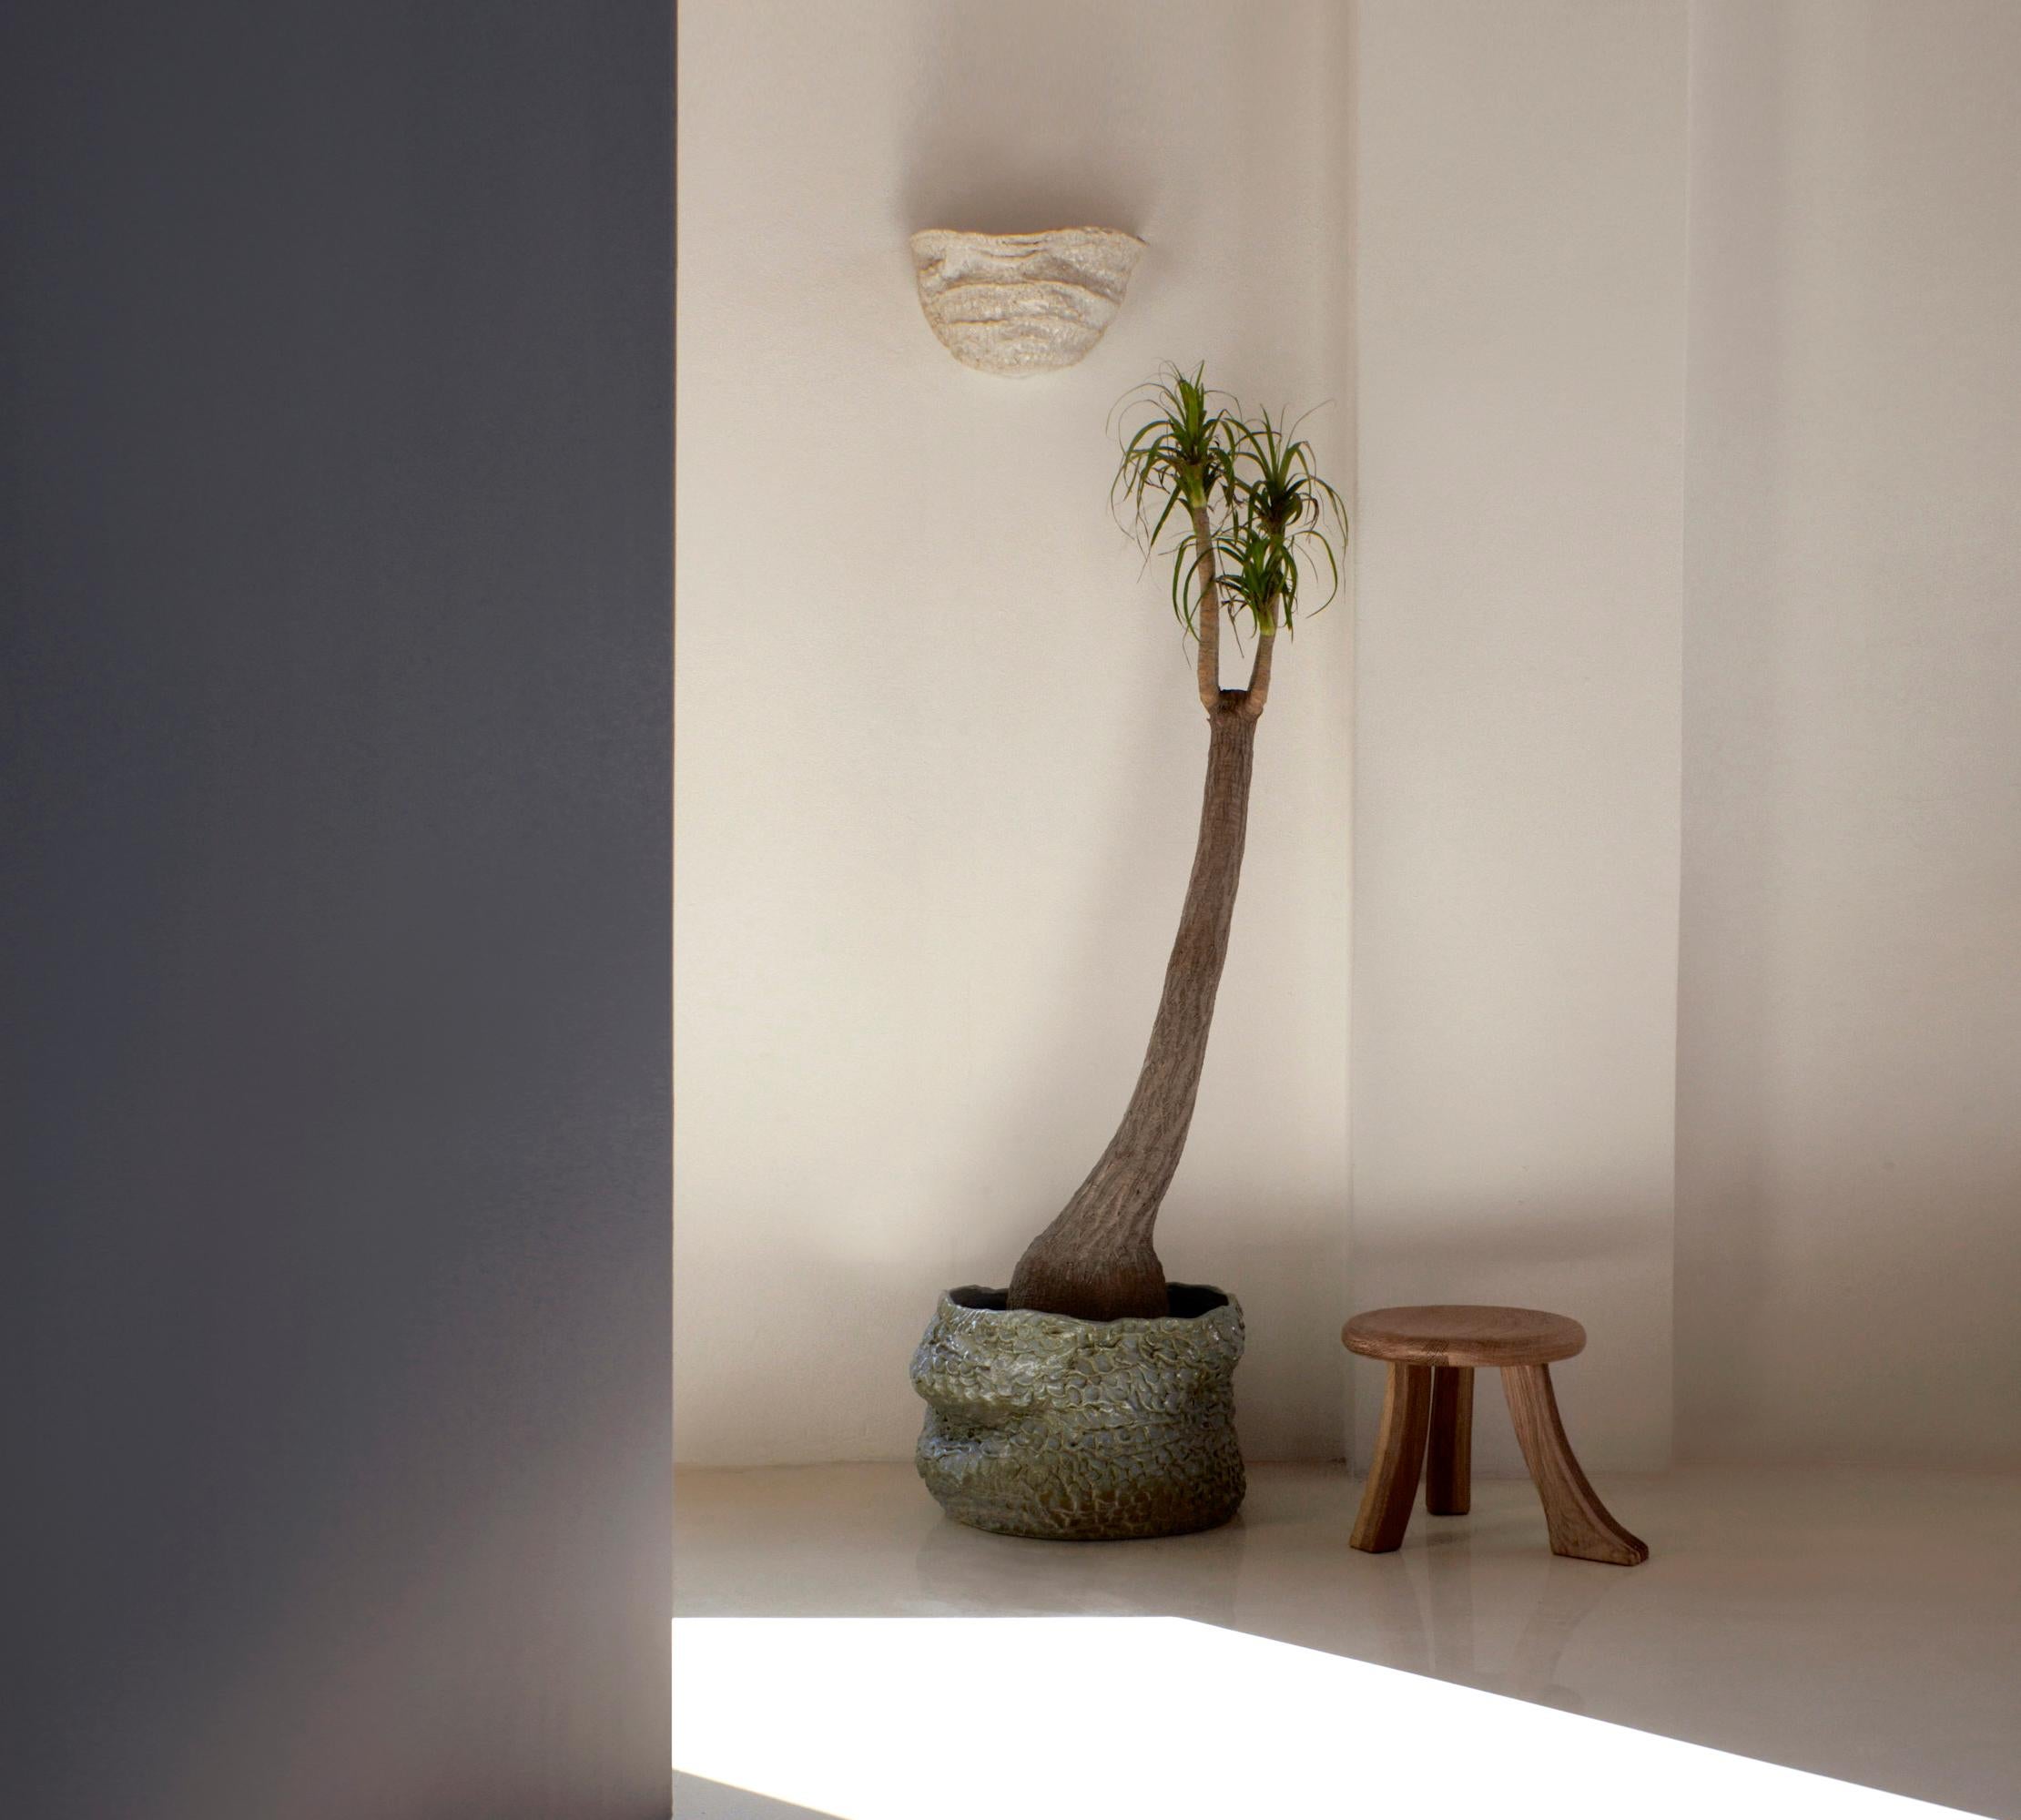 Applique Casa n° 6 en blanc
Conçu par le project 213A en 2023

Lampe artisanale en céramique avec finition texturée, fabriquée dans l'atelier de céramique de Project 213A.
Chaque pièce est unique en raison de sa nature artisanale, les formes et les